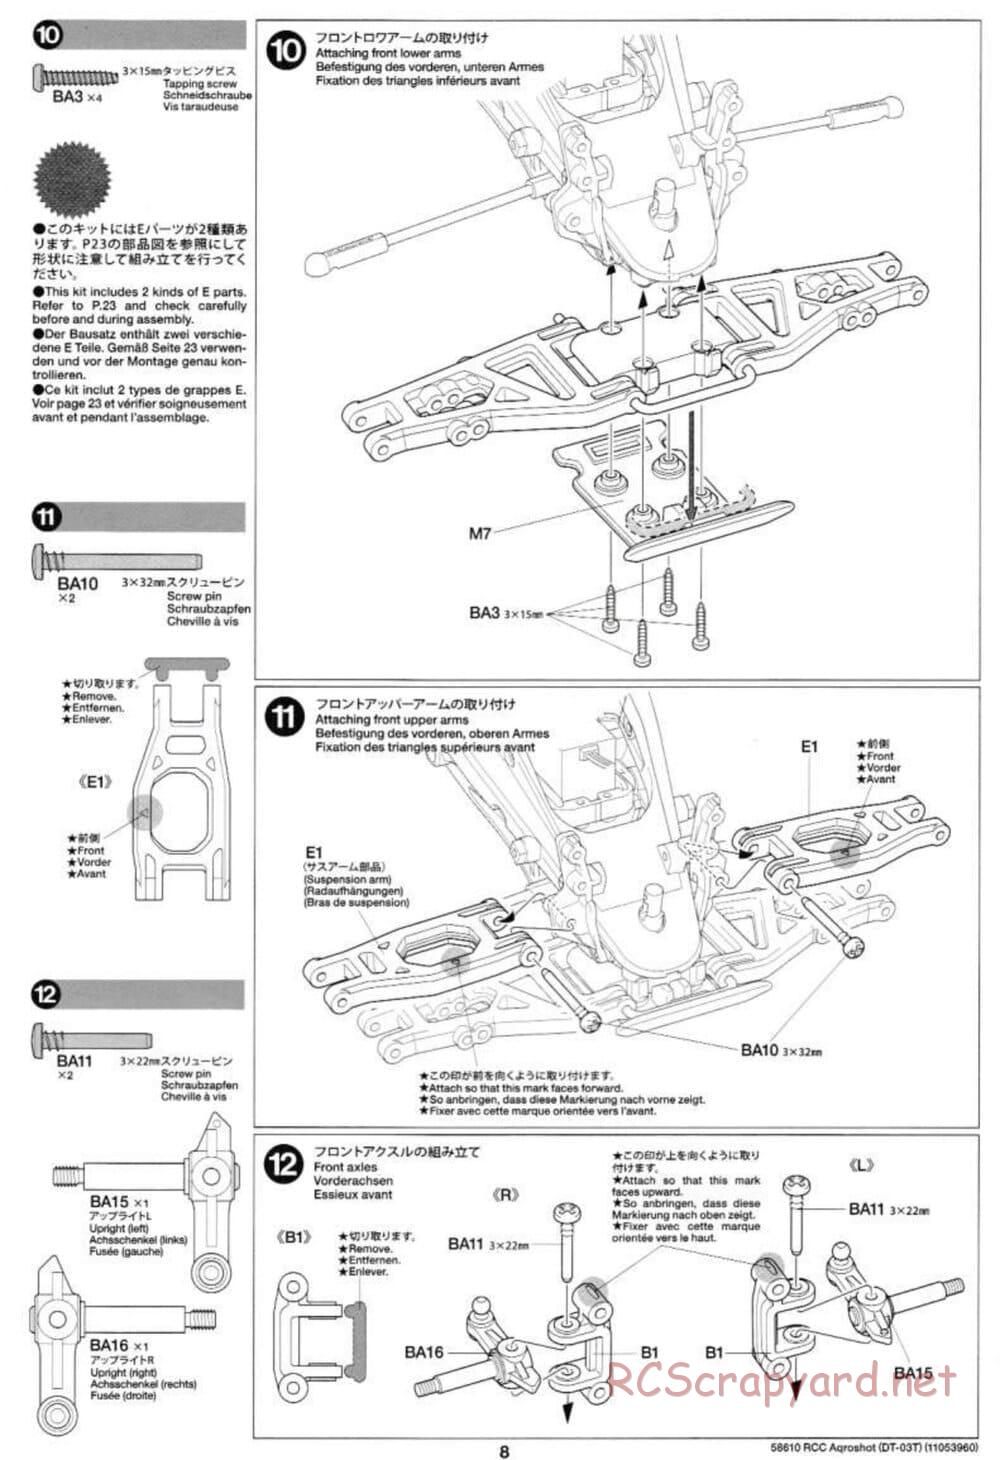 Tamiya - Aqroshot Chassis - Manual - Page 8